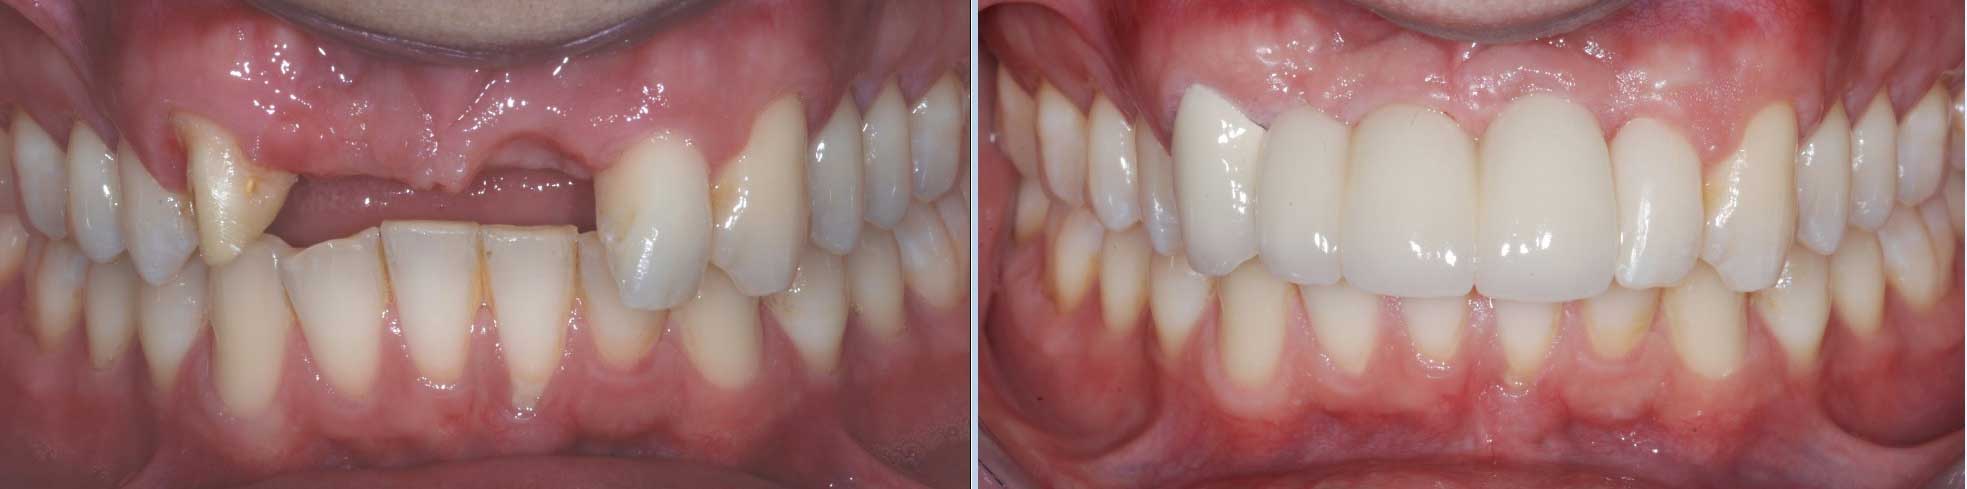 teeth implant treatment battersea